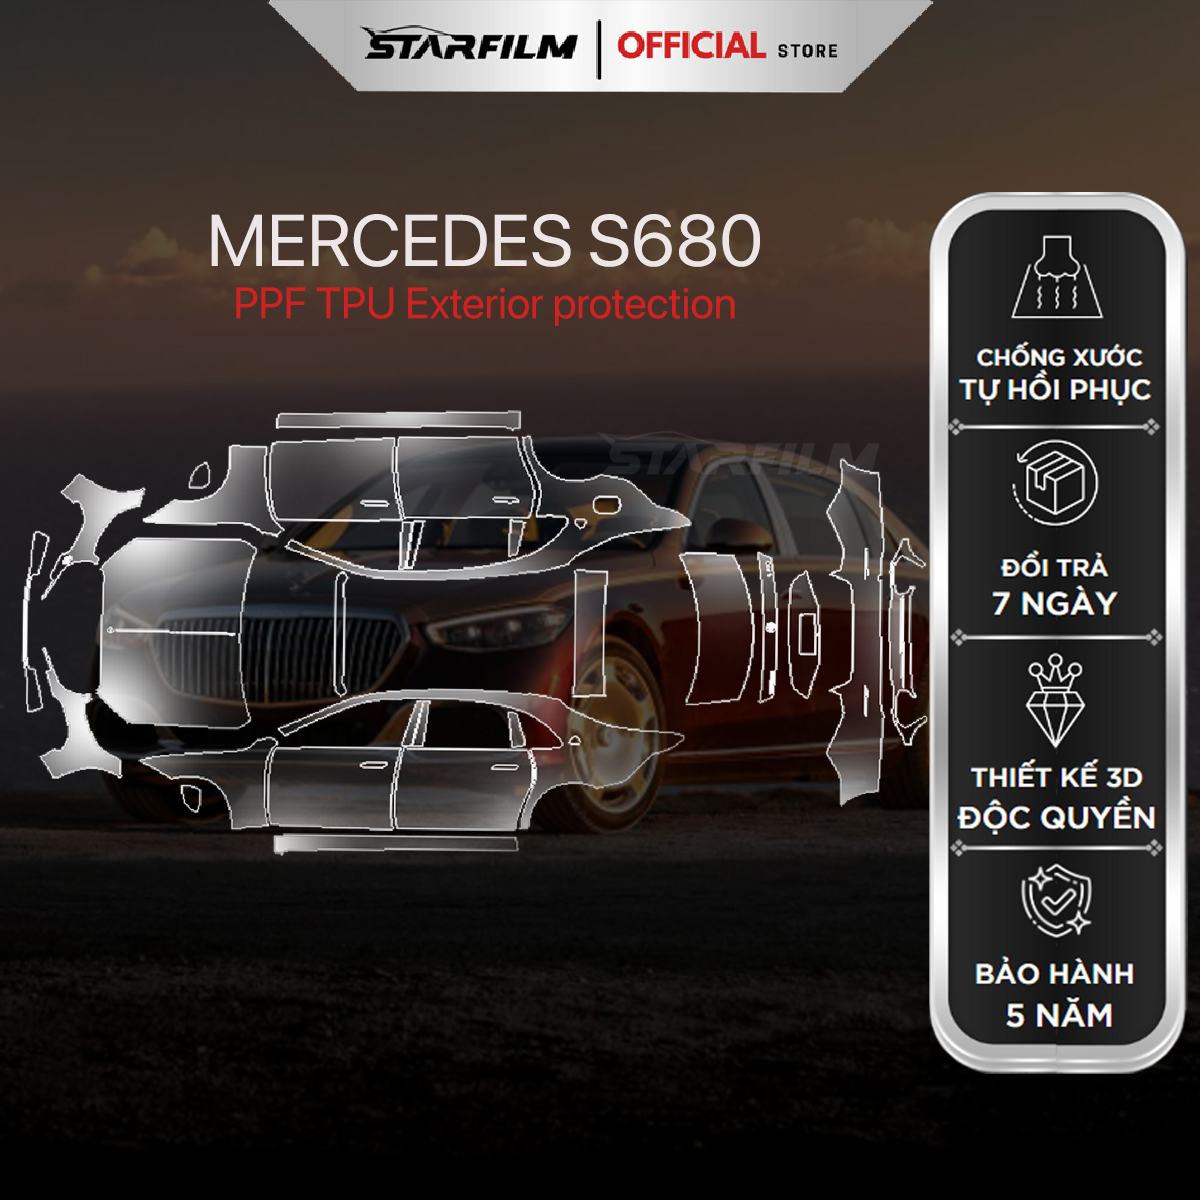 Mercedes Maybach S680 PPF TPU ngoại thất chống xước tự hồi phục STARFILM